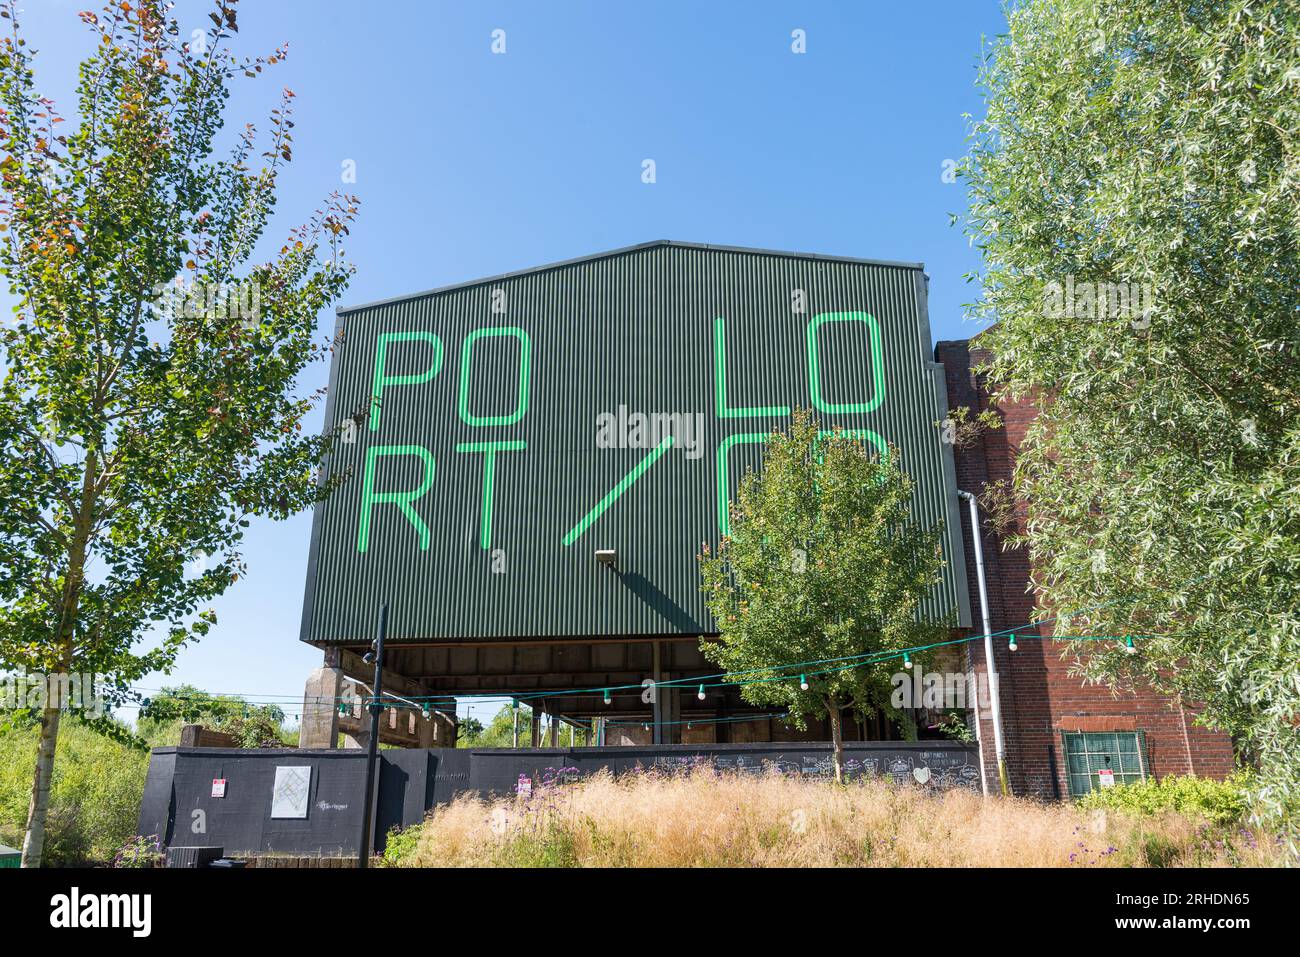 Port Loop ist ein 43 Hektar großes Gebäude am Kanal nahe dem Stadtzentrum von Birmingham, das auf alten Industrieflächen erbaut wurde. Stockfoto